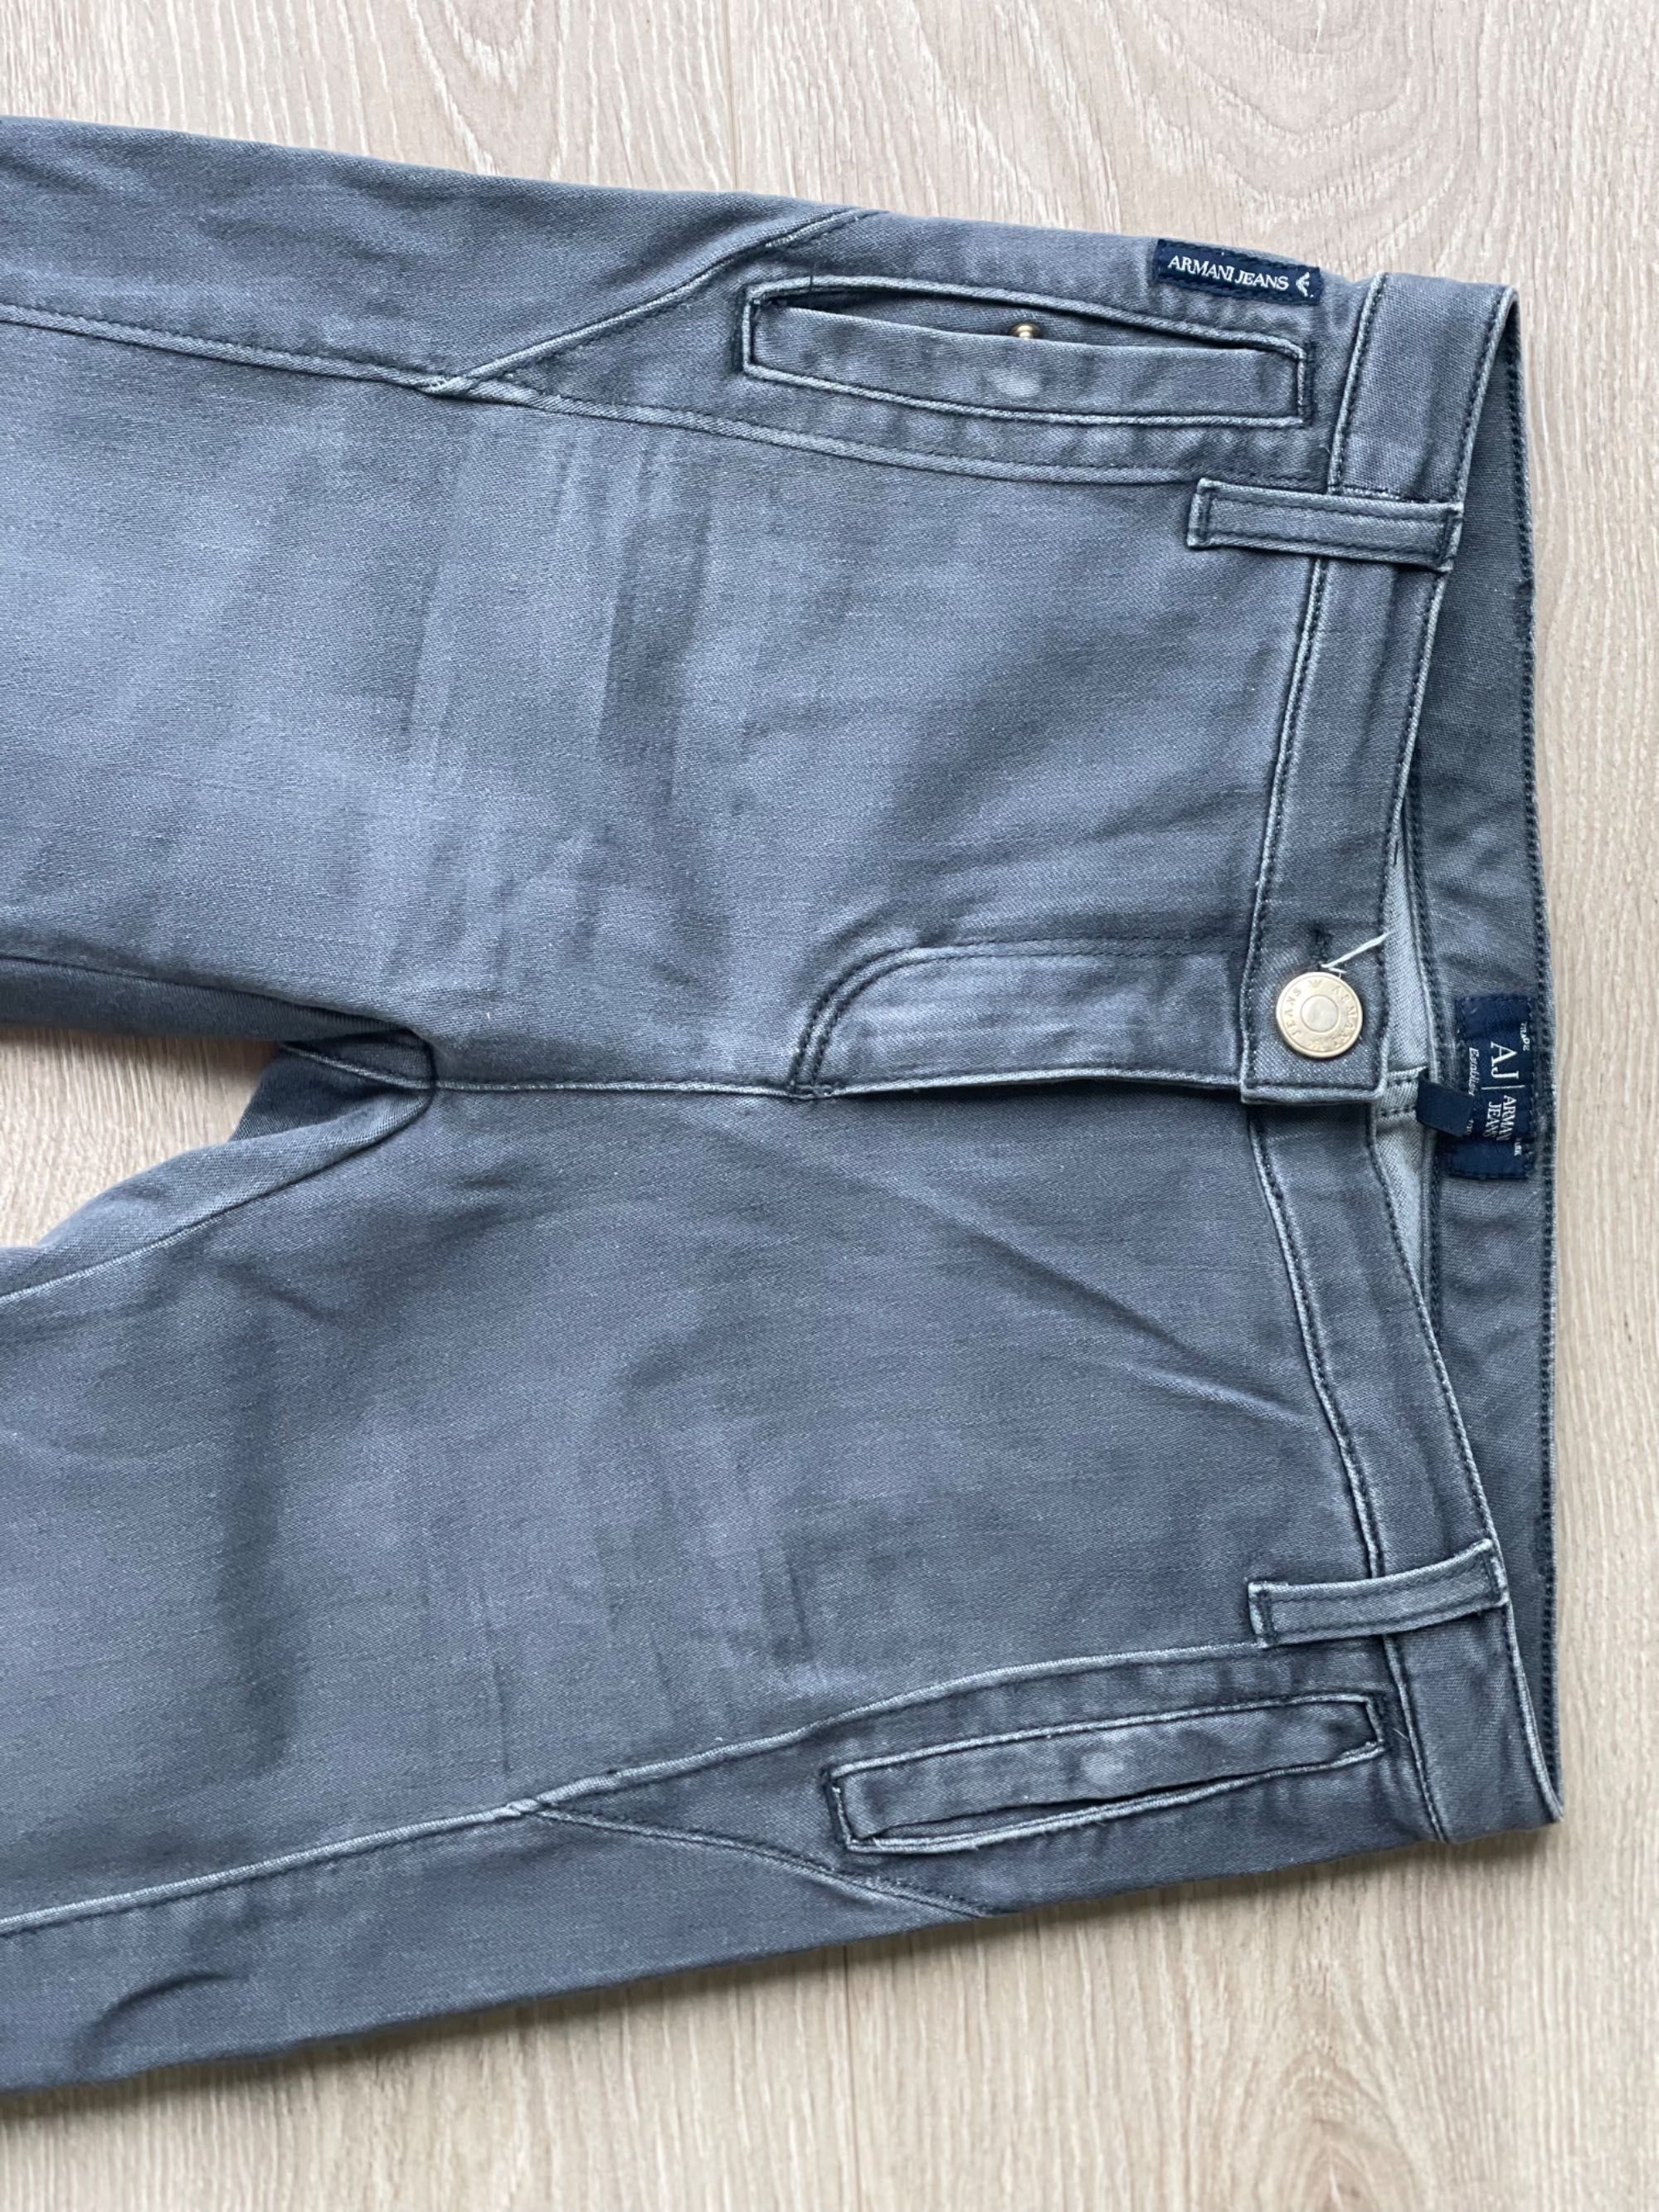 Spodnie jeansowe firmy armani